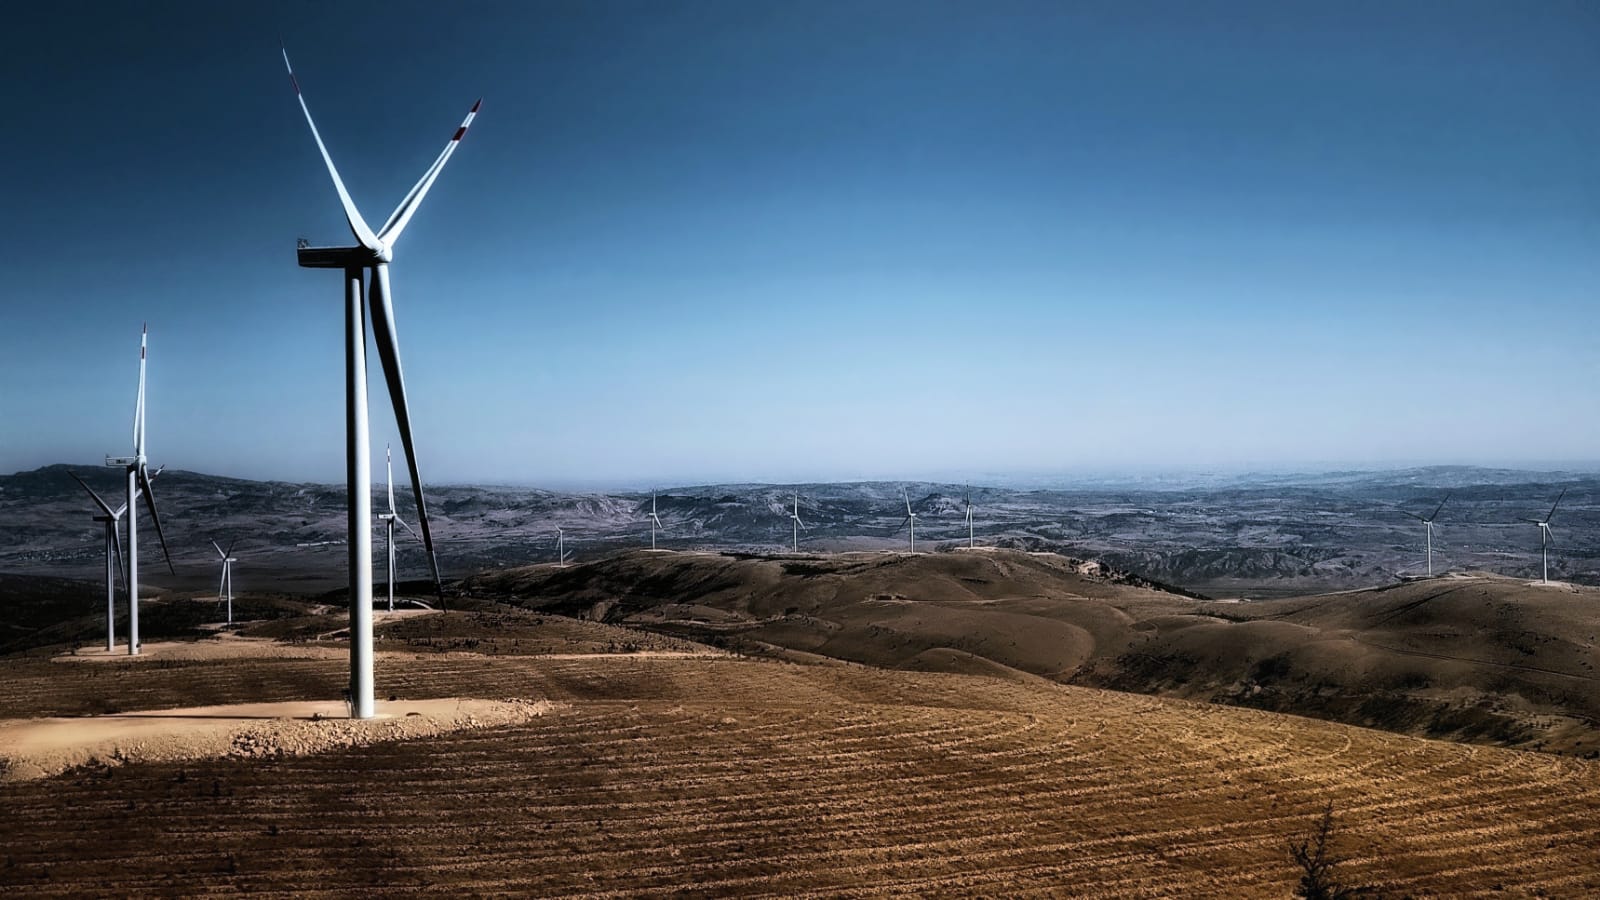 “Yenilenebilir enerjiyle yıllık 300 bin ton karbon salınımını önleyeceğiz”